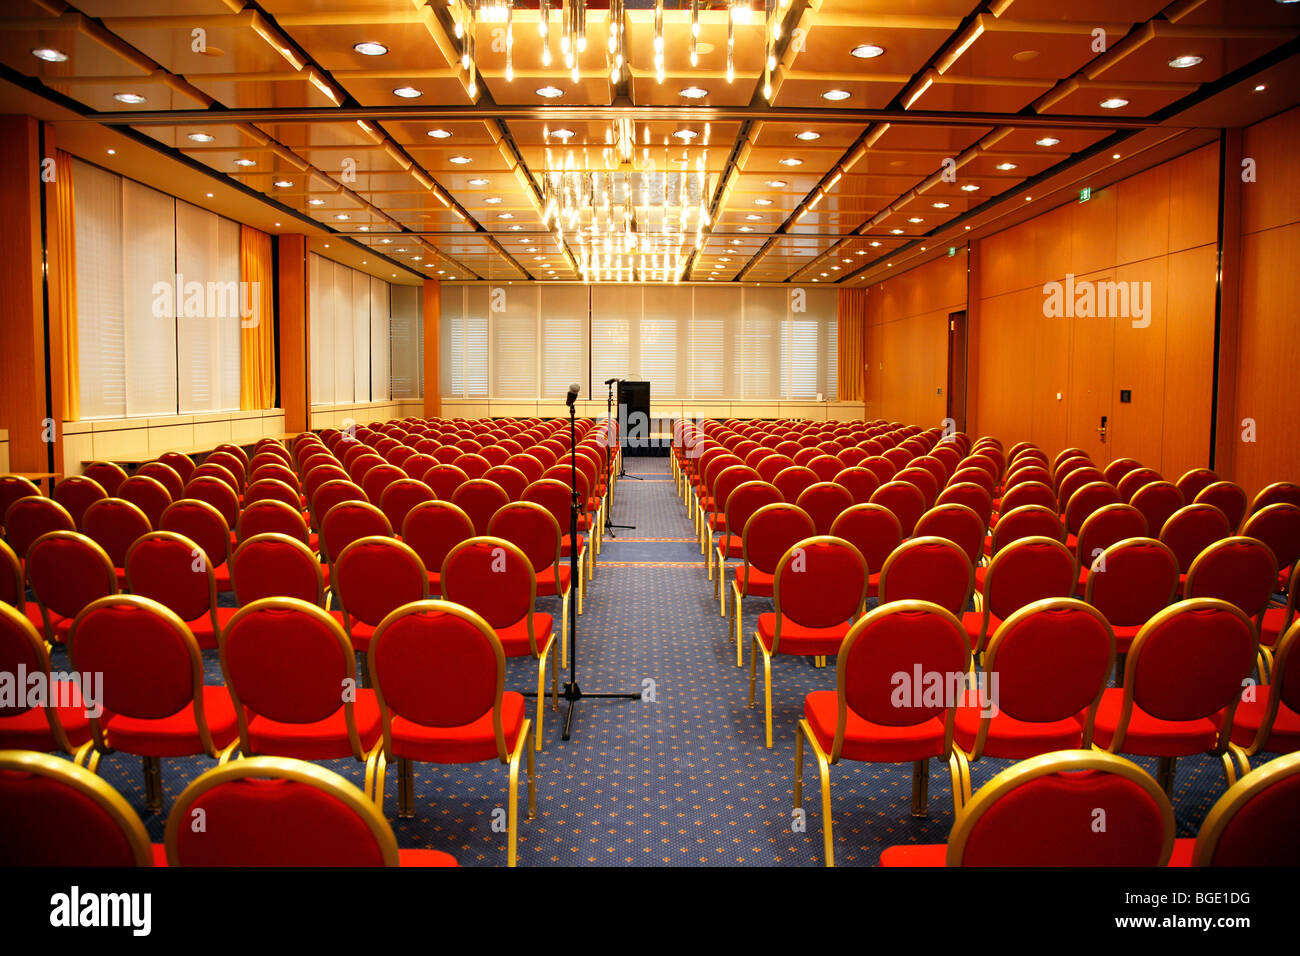 Konferenzsaal mit roten Stühlen in Reihen Stockfoto